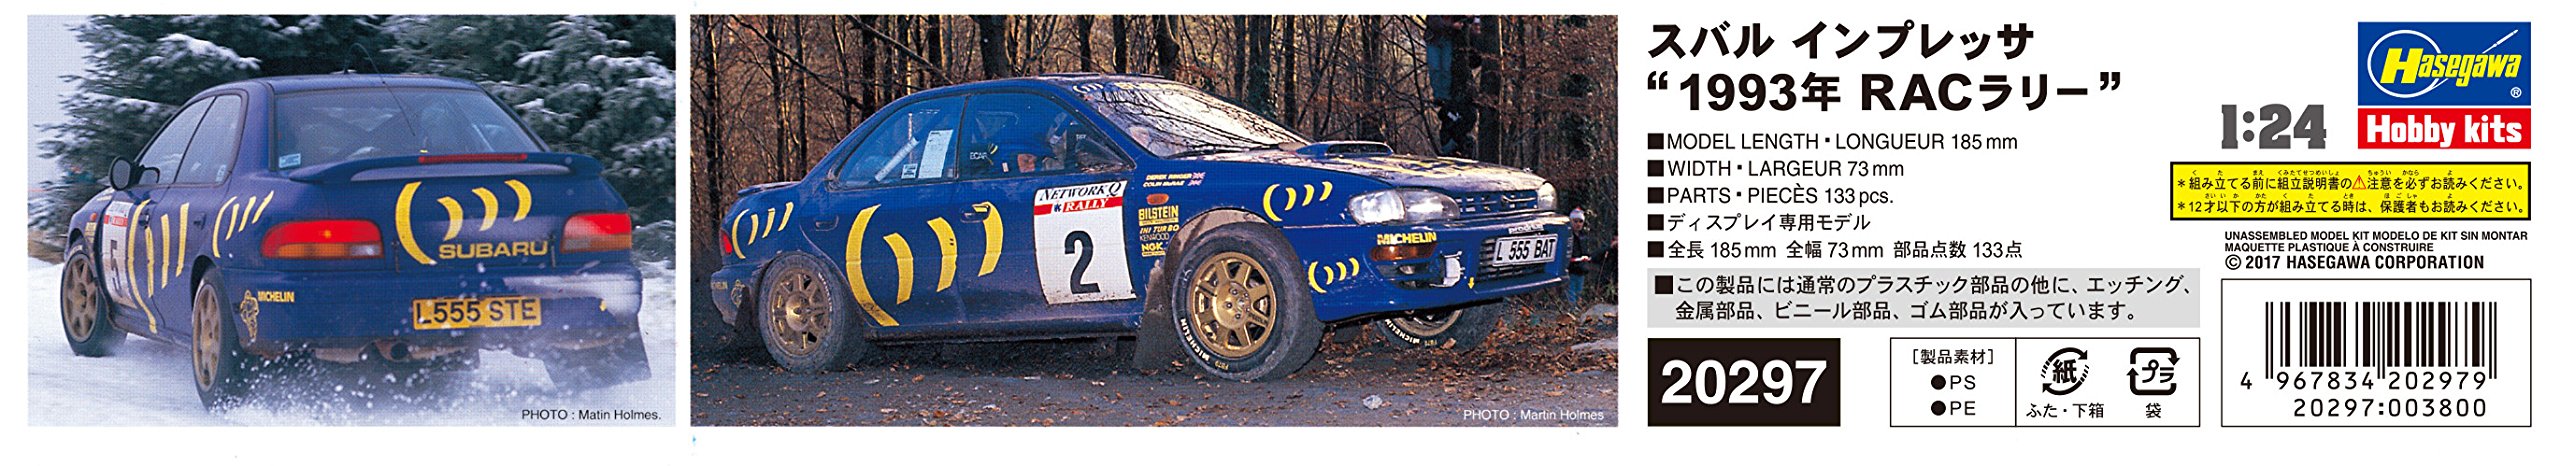 HASEGAWA - 20297 Subaru Impreza Wrx 1993 Rac Rally 1/24 Scale Kit